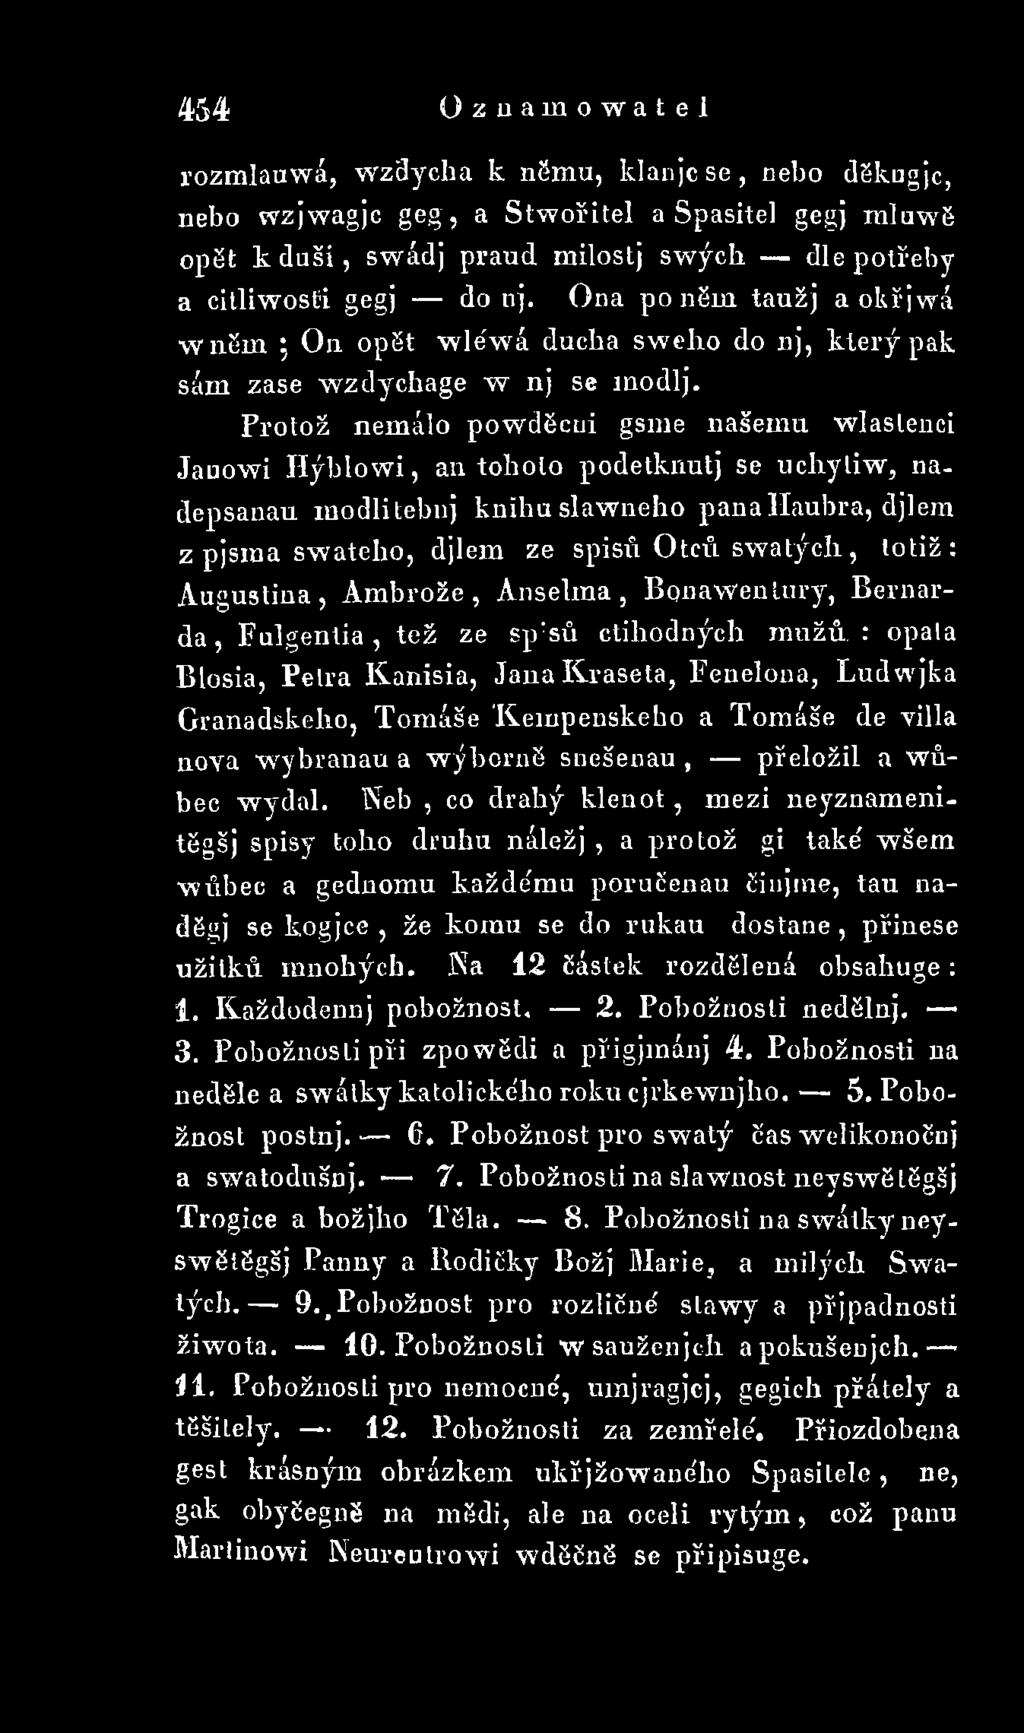 Granadskeho, Tom áše 'Kempenskeho a Tom áše de villa nova wybranau a wýborns suešenau, přeložil a wůbec wytjal.